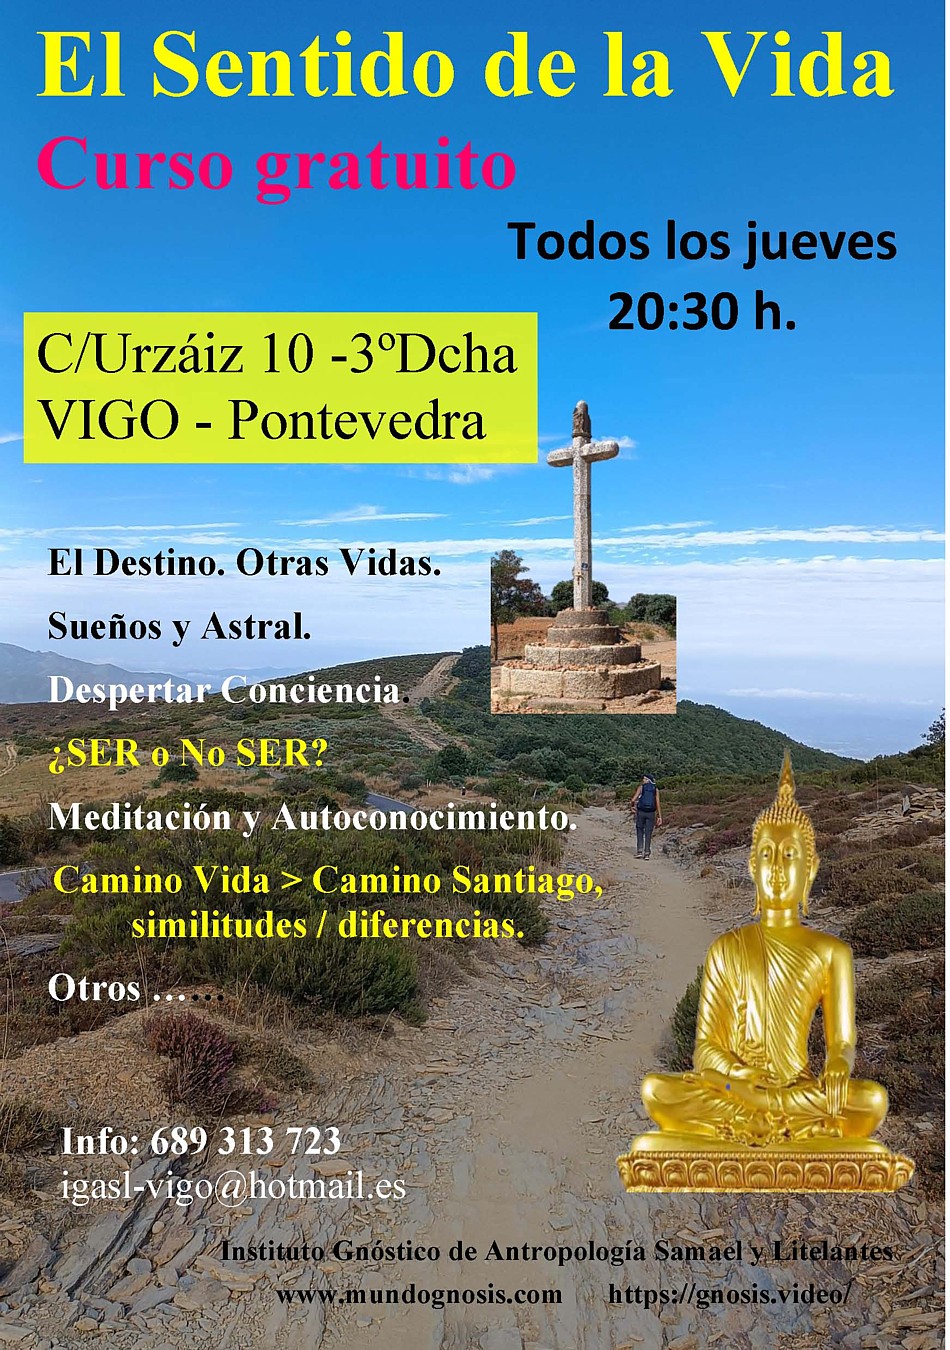 Vigo: Relajación, concentración y meditación, las claves para el despertar de la conciencia